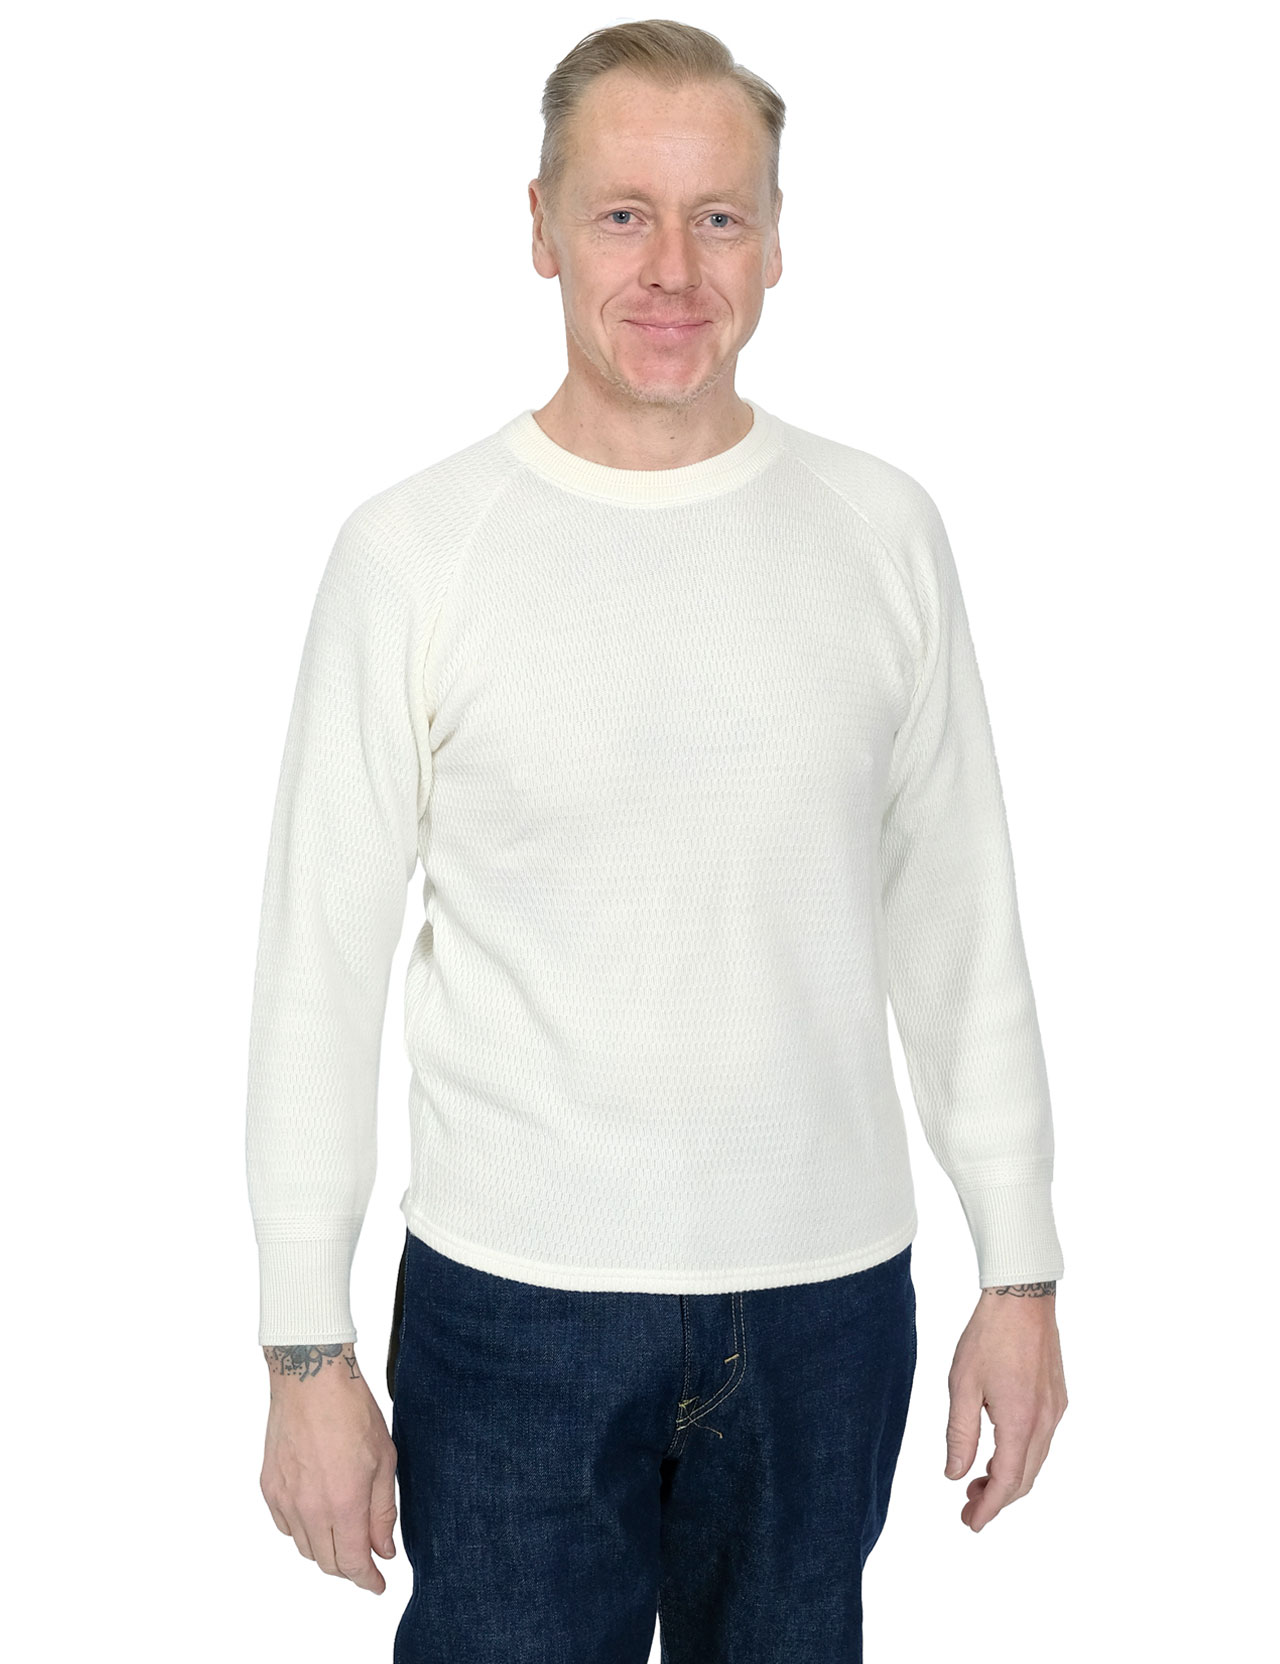 Stevenson-Overall-Co.---Merino-Wool-Thermal-Shirt---Off-White-991-12